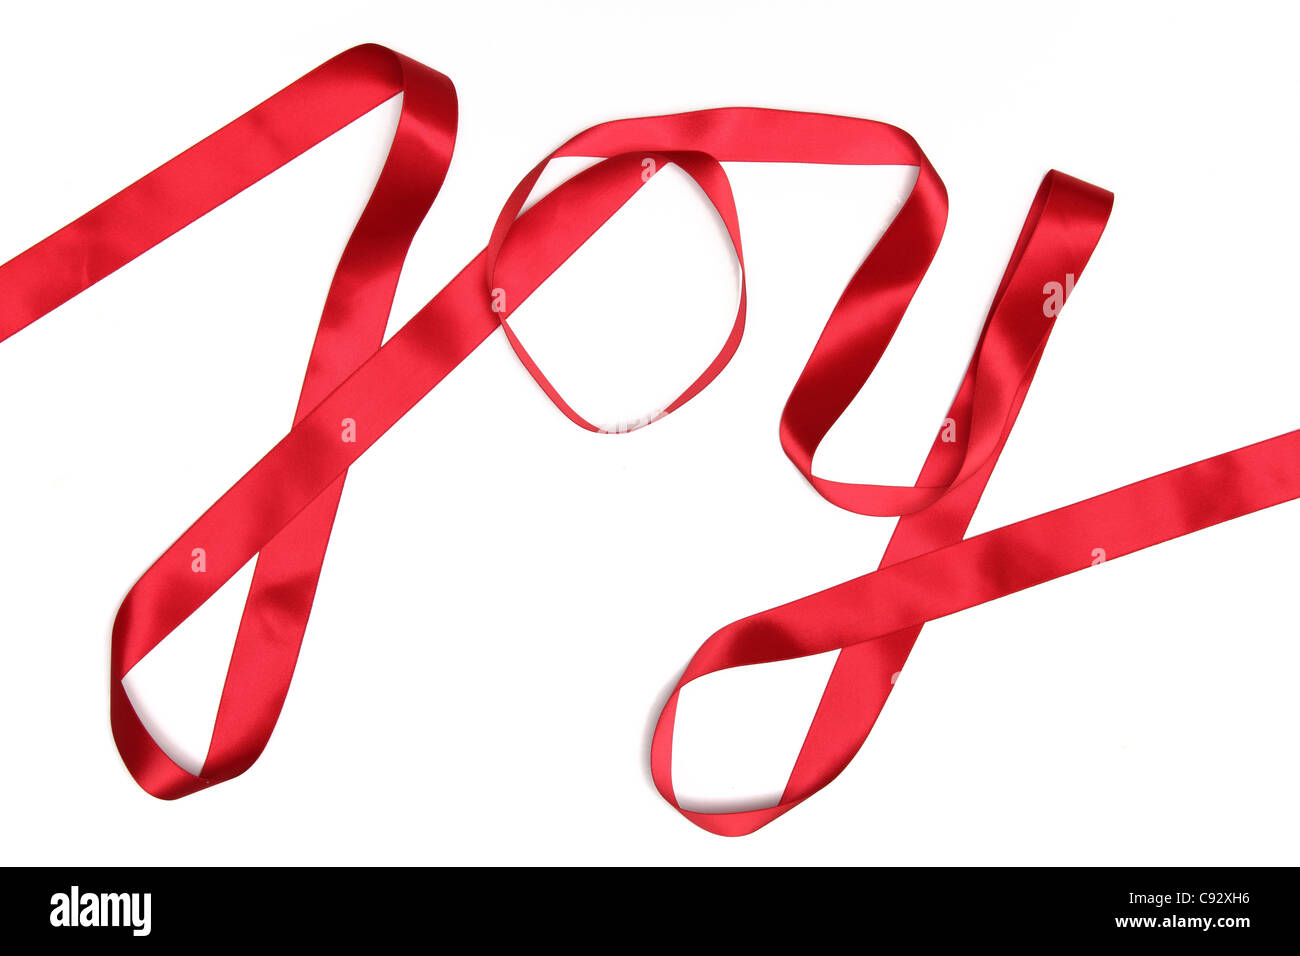 Freude Wort geschrieben in rotes Band auf weißem Hintergrund Stockfoto